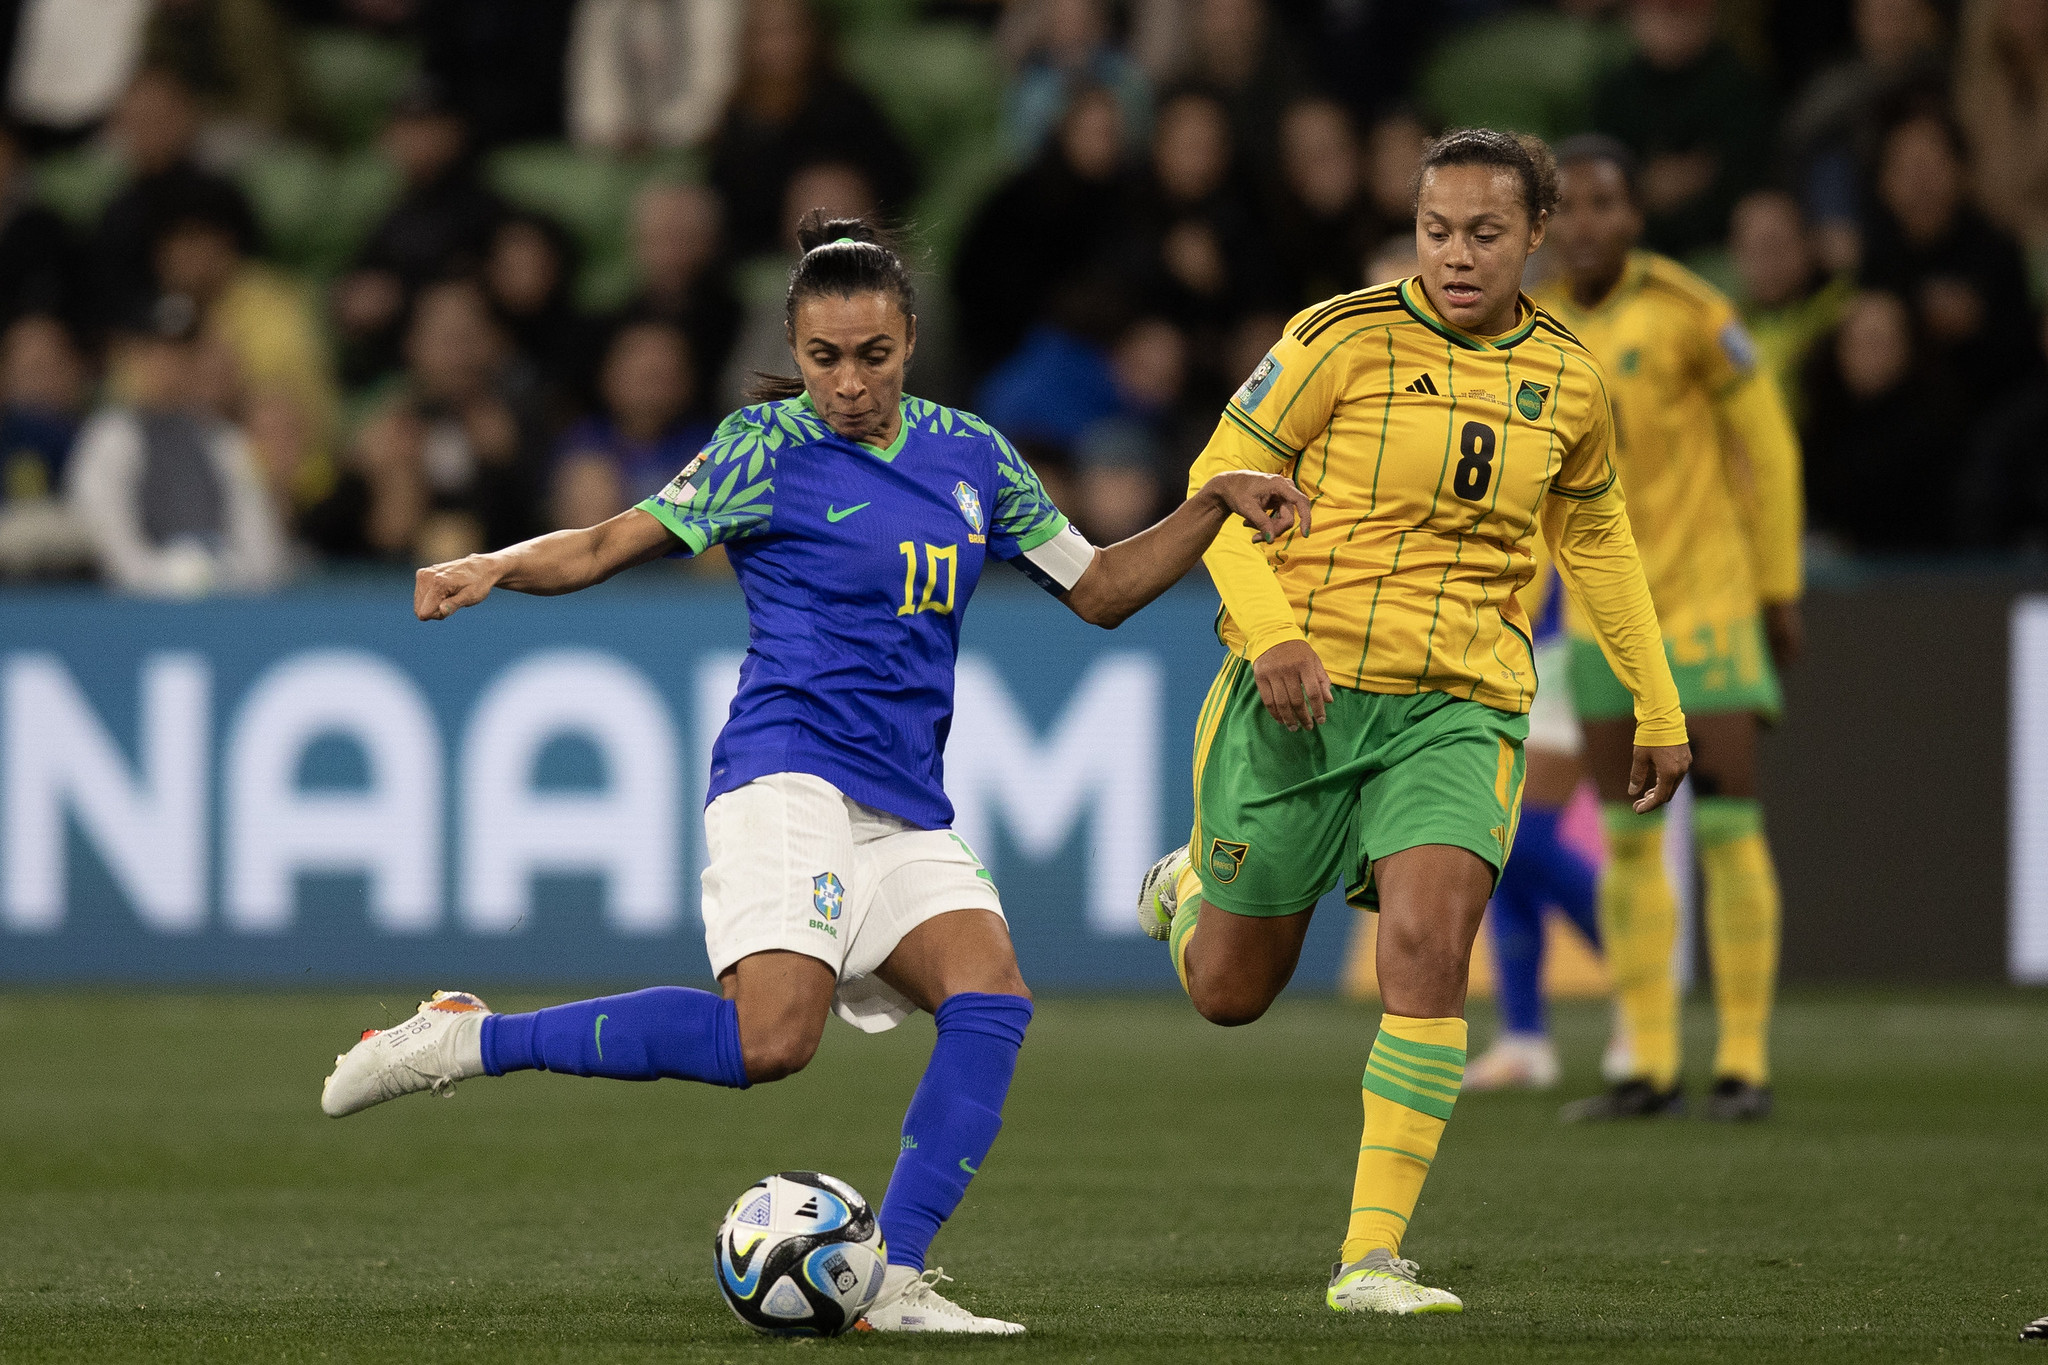 Futebol além das fronteiras de gênero: quais as lições da Copa do Mundo Feminina